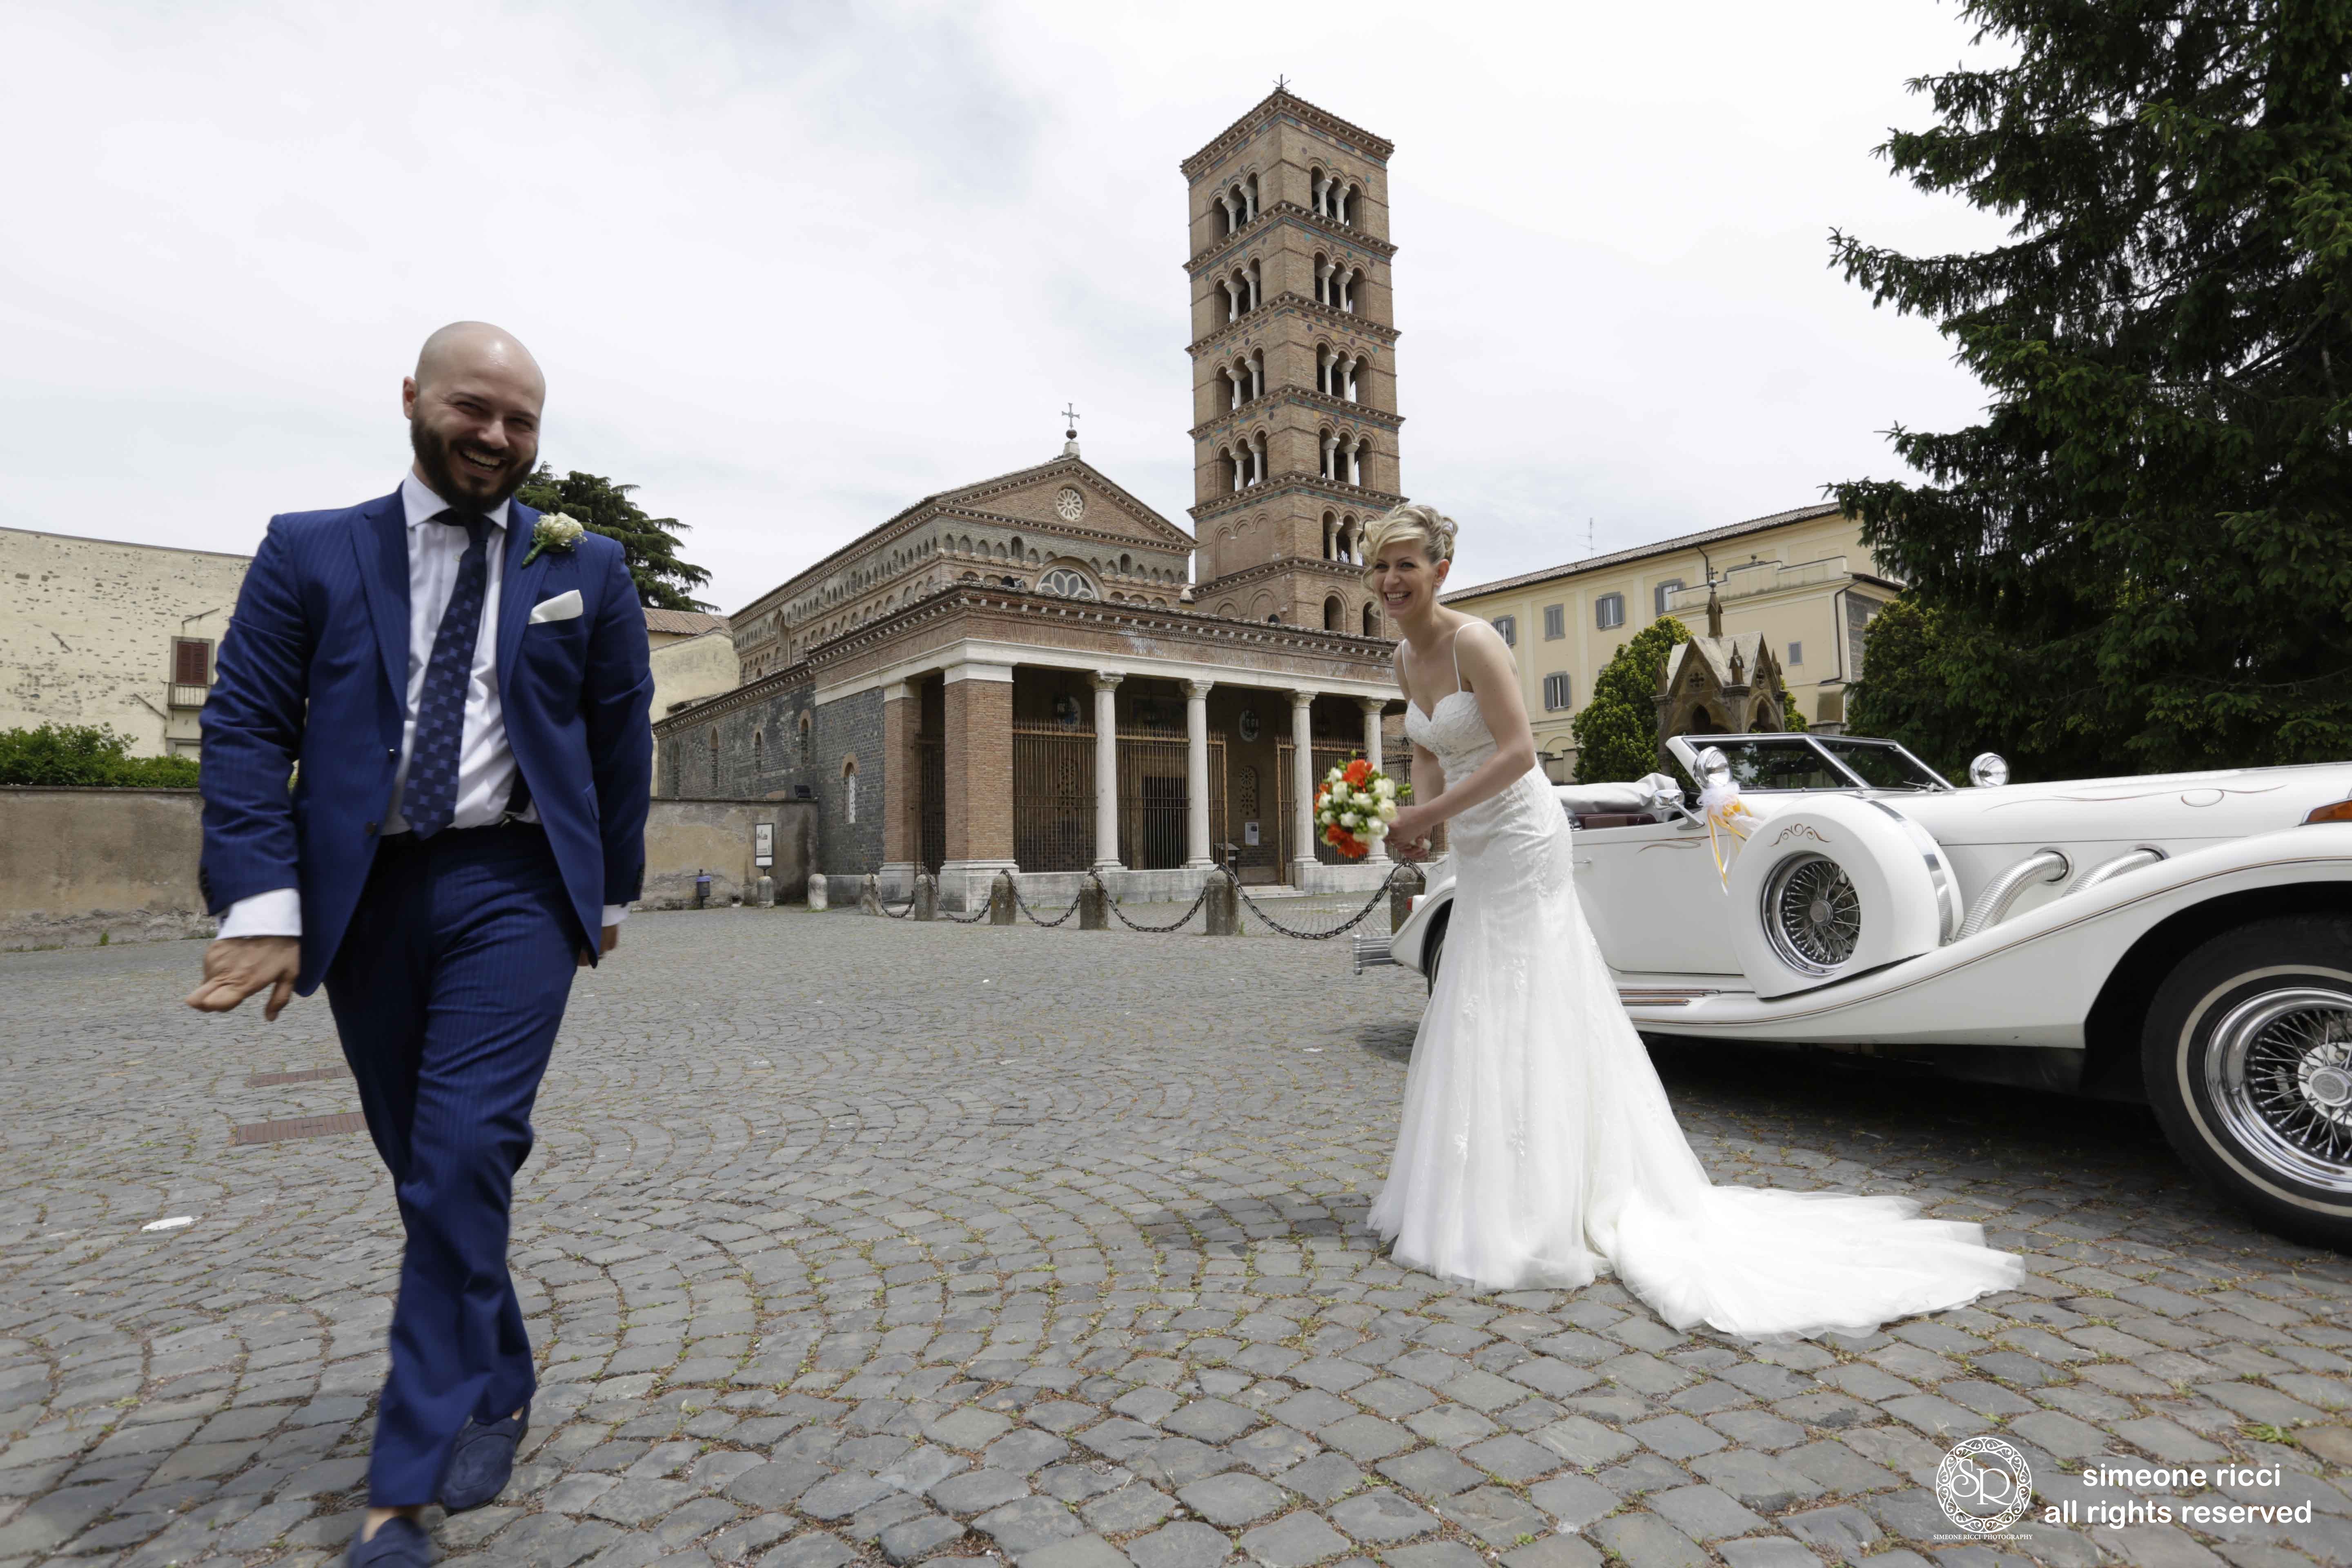 simeone ricci fotografo matrimonio roma